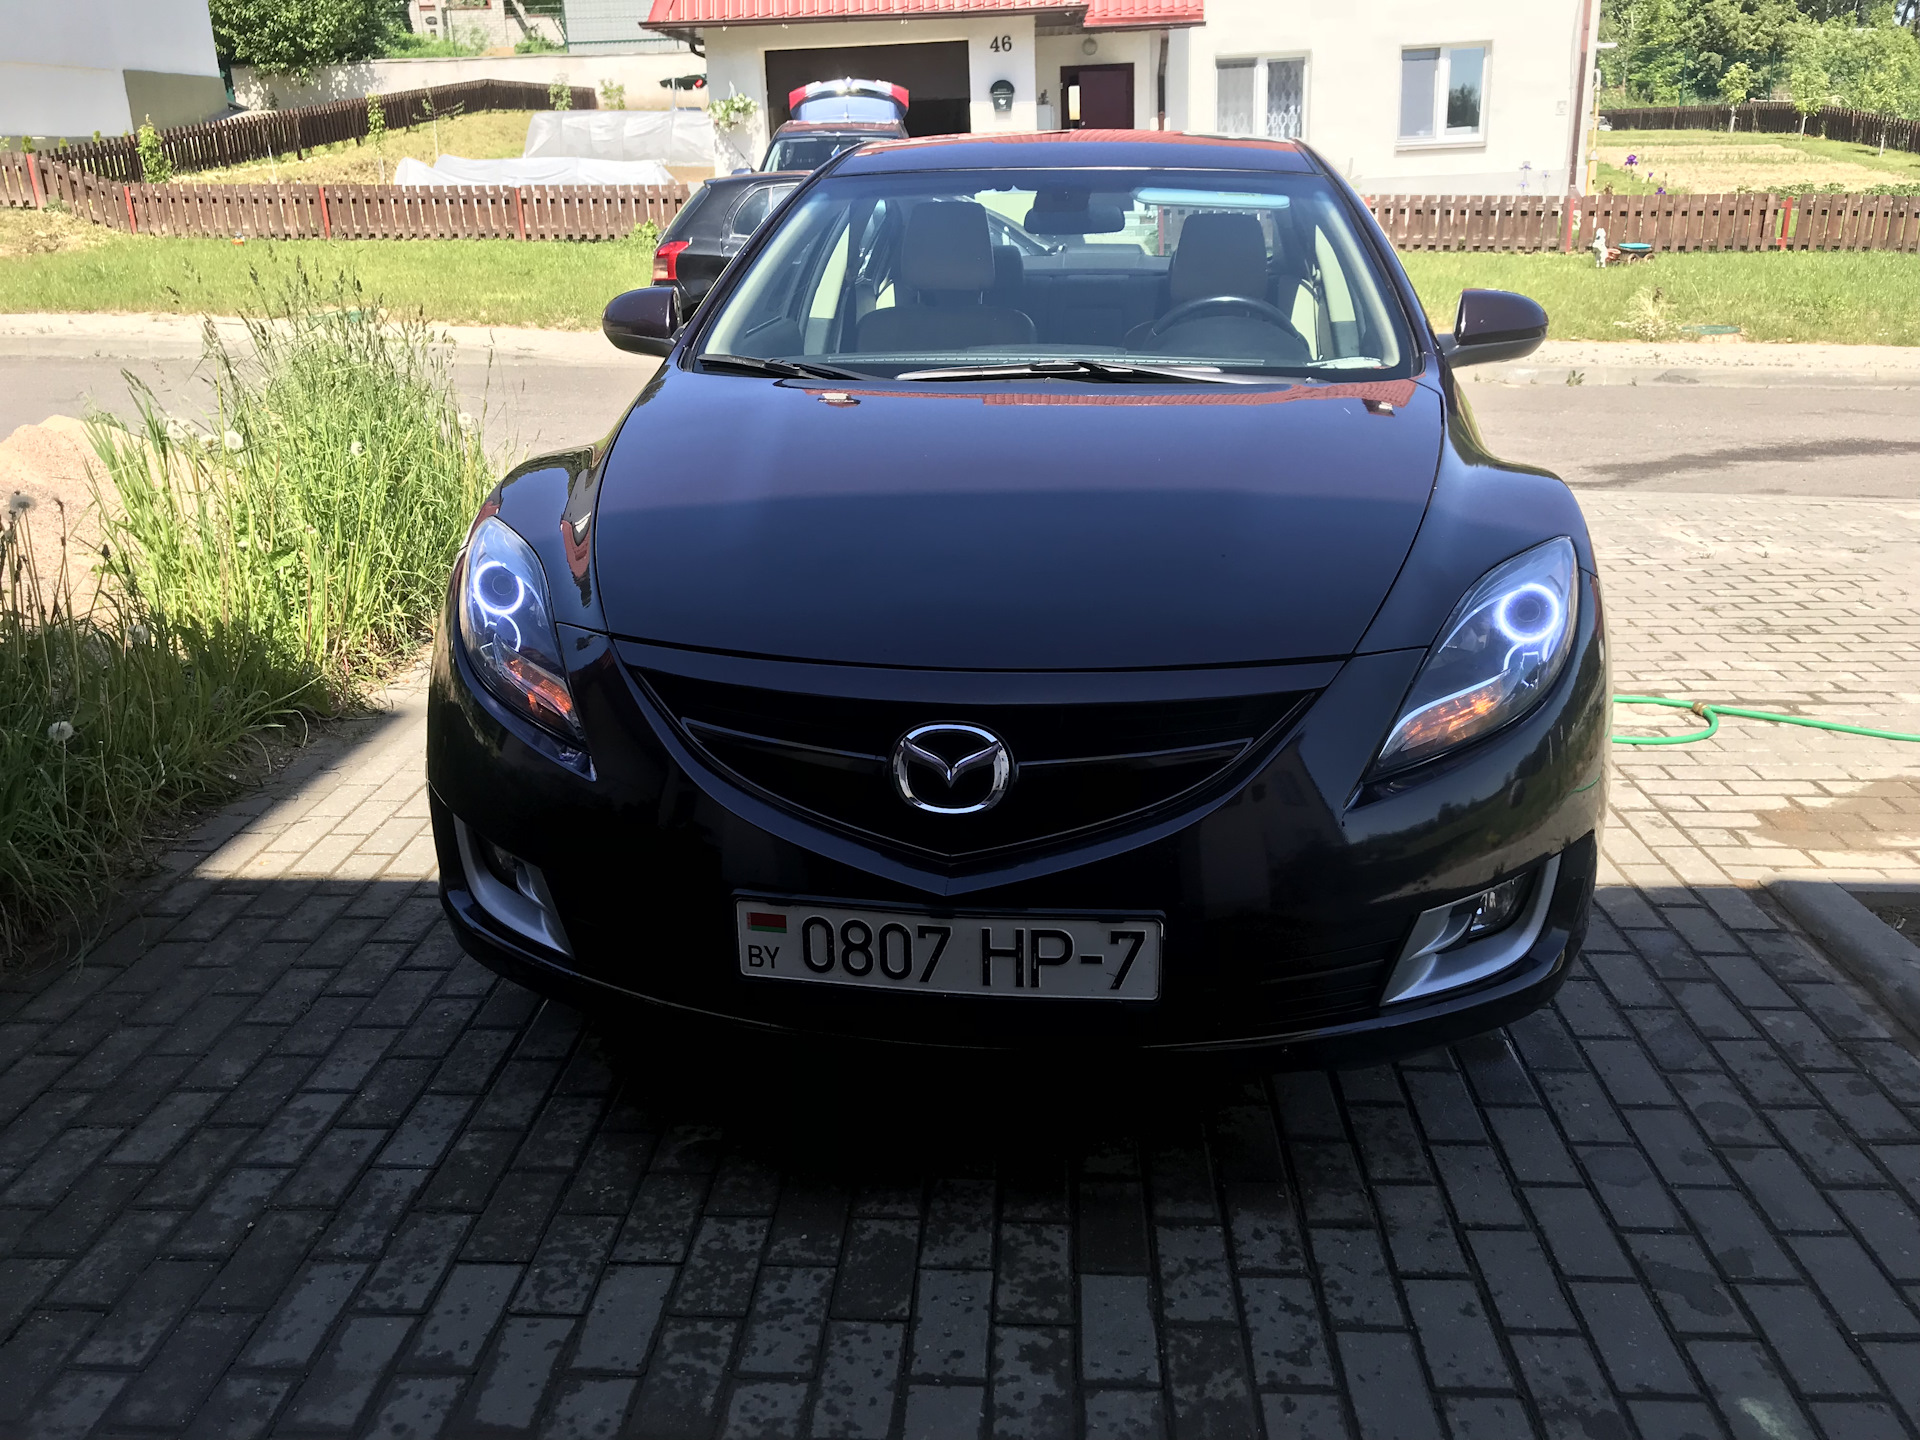 Mazda gh 2.5. Мазда 6 GH. Мазда 6 GH 2.5. Мазда 6 GH фиолетовая. Mazda 6 GH сиреневый цвет.